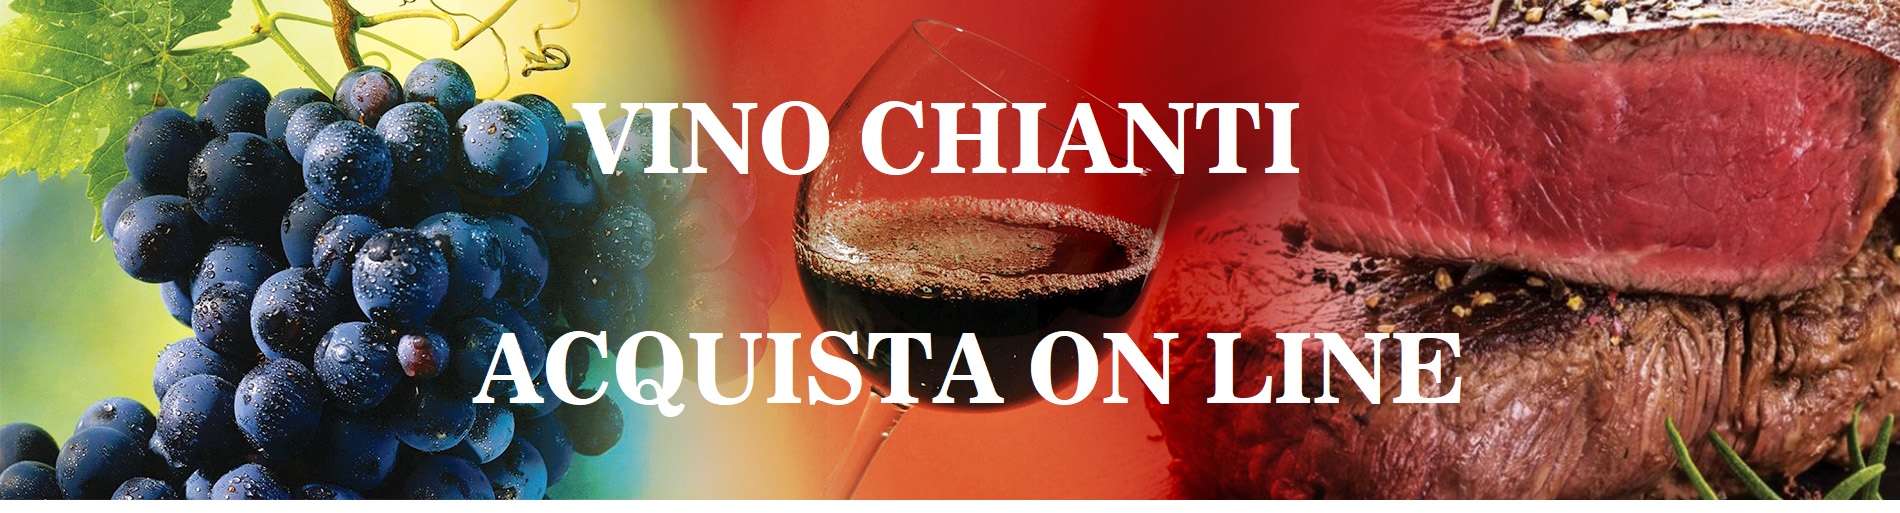 Vino Chianti  - Acquista On Line